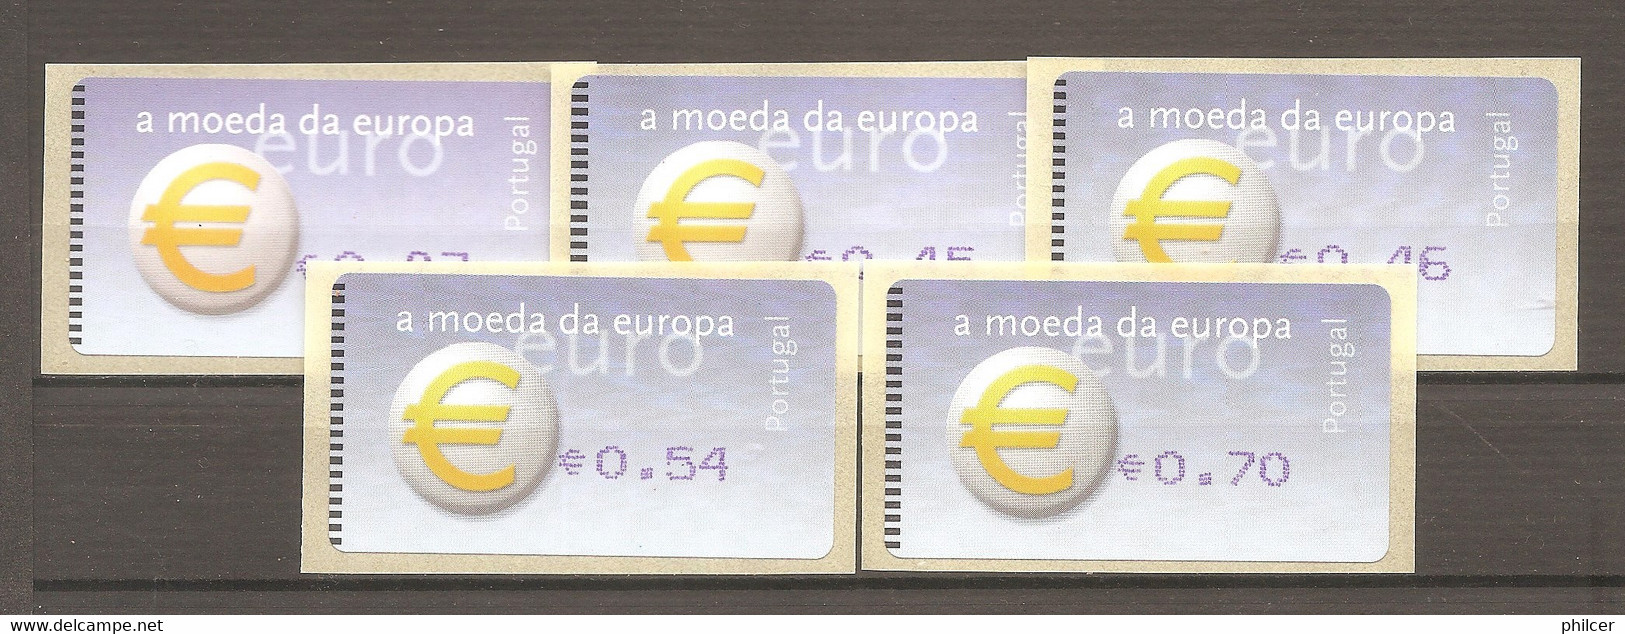 Portugal, 2002, # 23 - Macchine Per Obliterare (EMA)